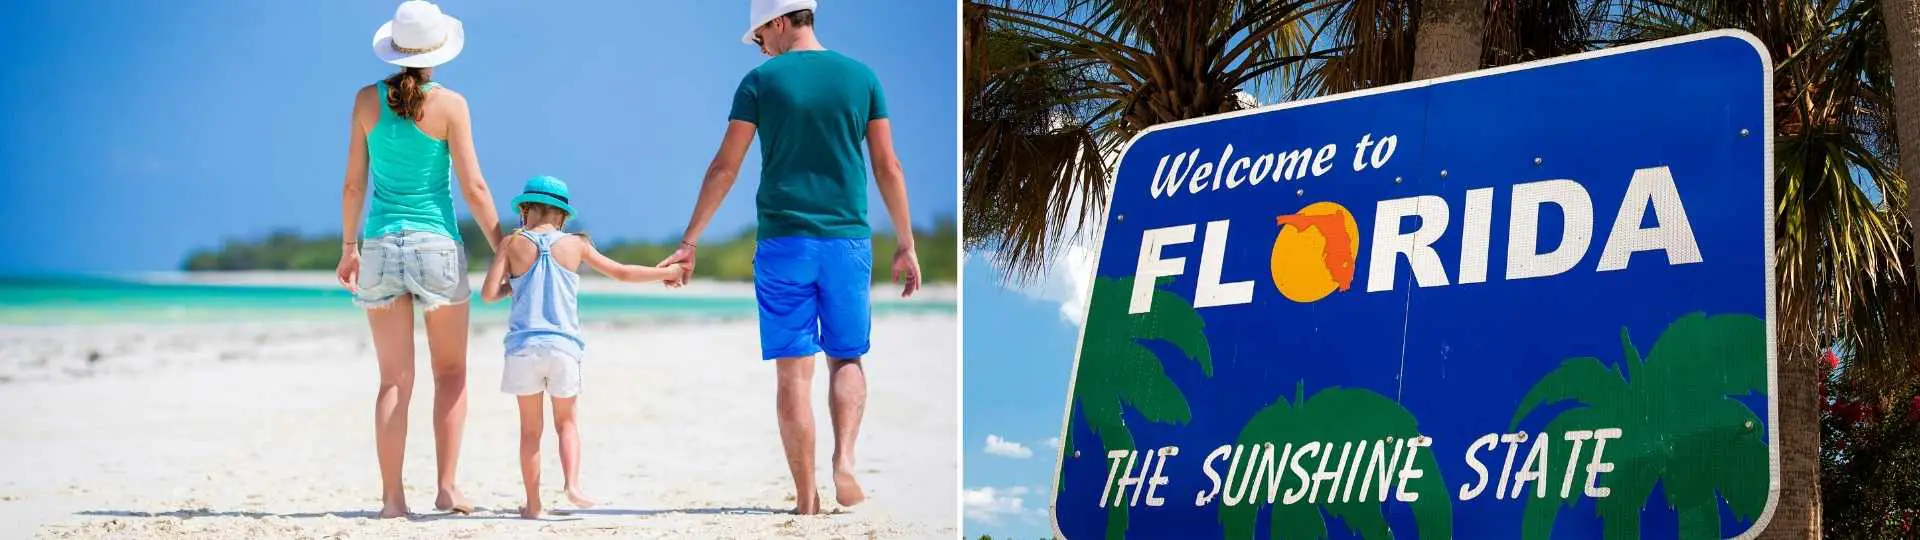 Sea propietario de una propiedad de vacaciones o una segunda casa en Florida